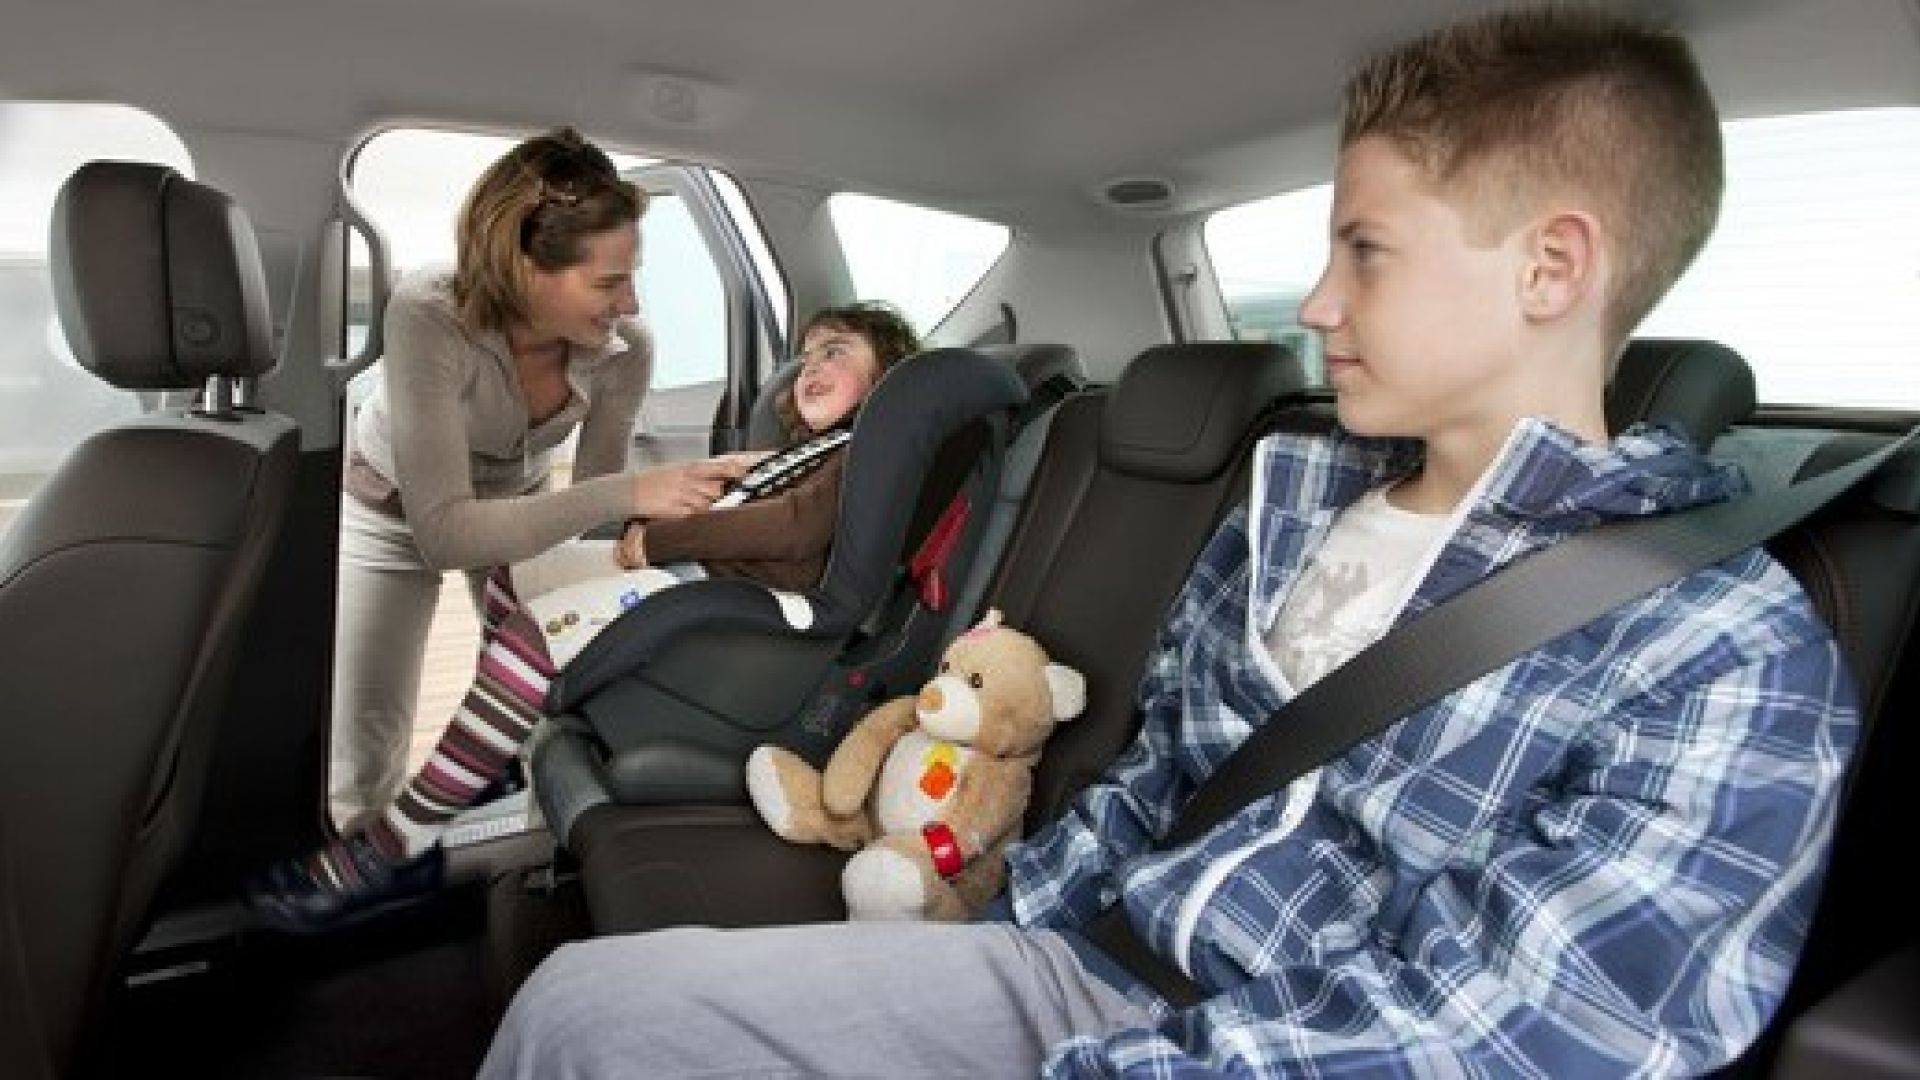 Пристегиваем ребенка в машине. Пассажир в машине. Детский ремень безопасности в машину. Ребёнок в автомобиле пристёгнут. Автомобиль для детей.